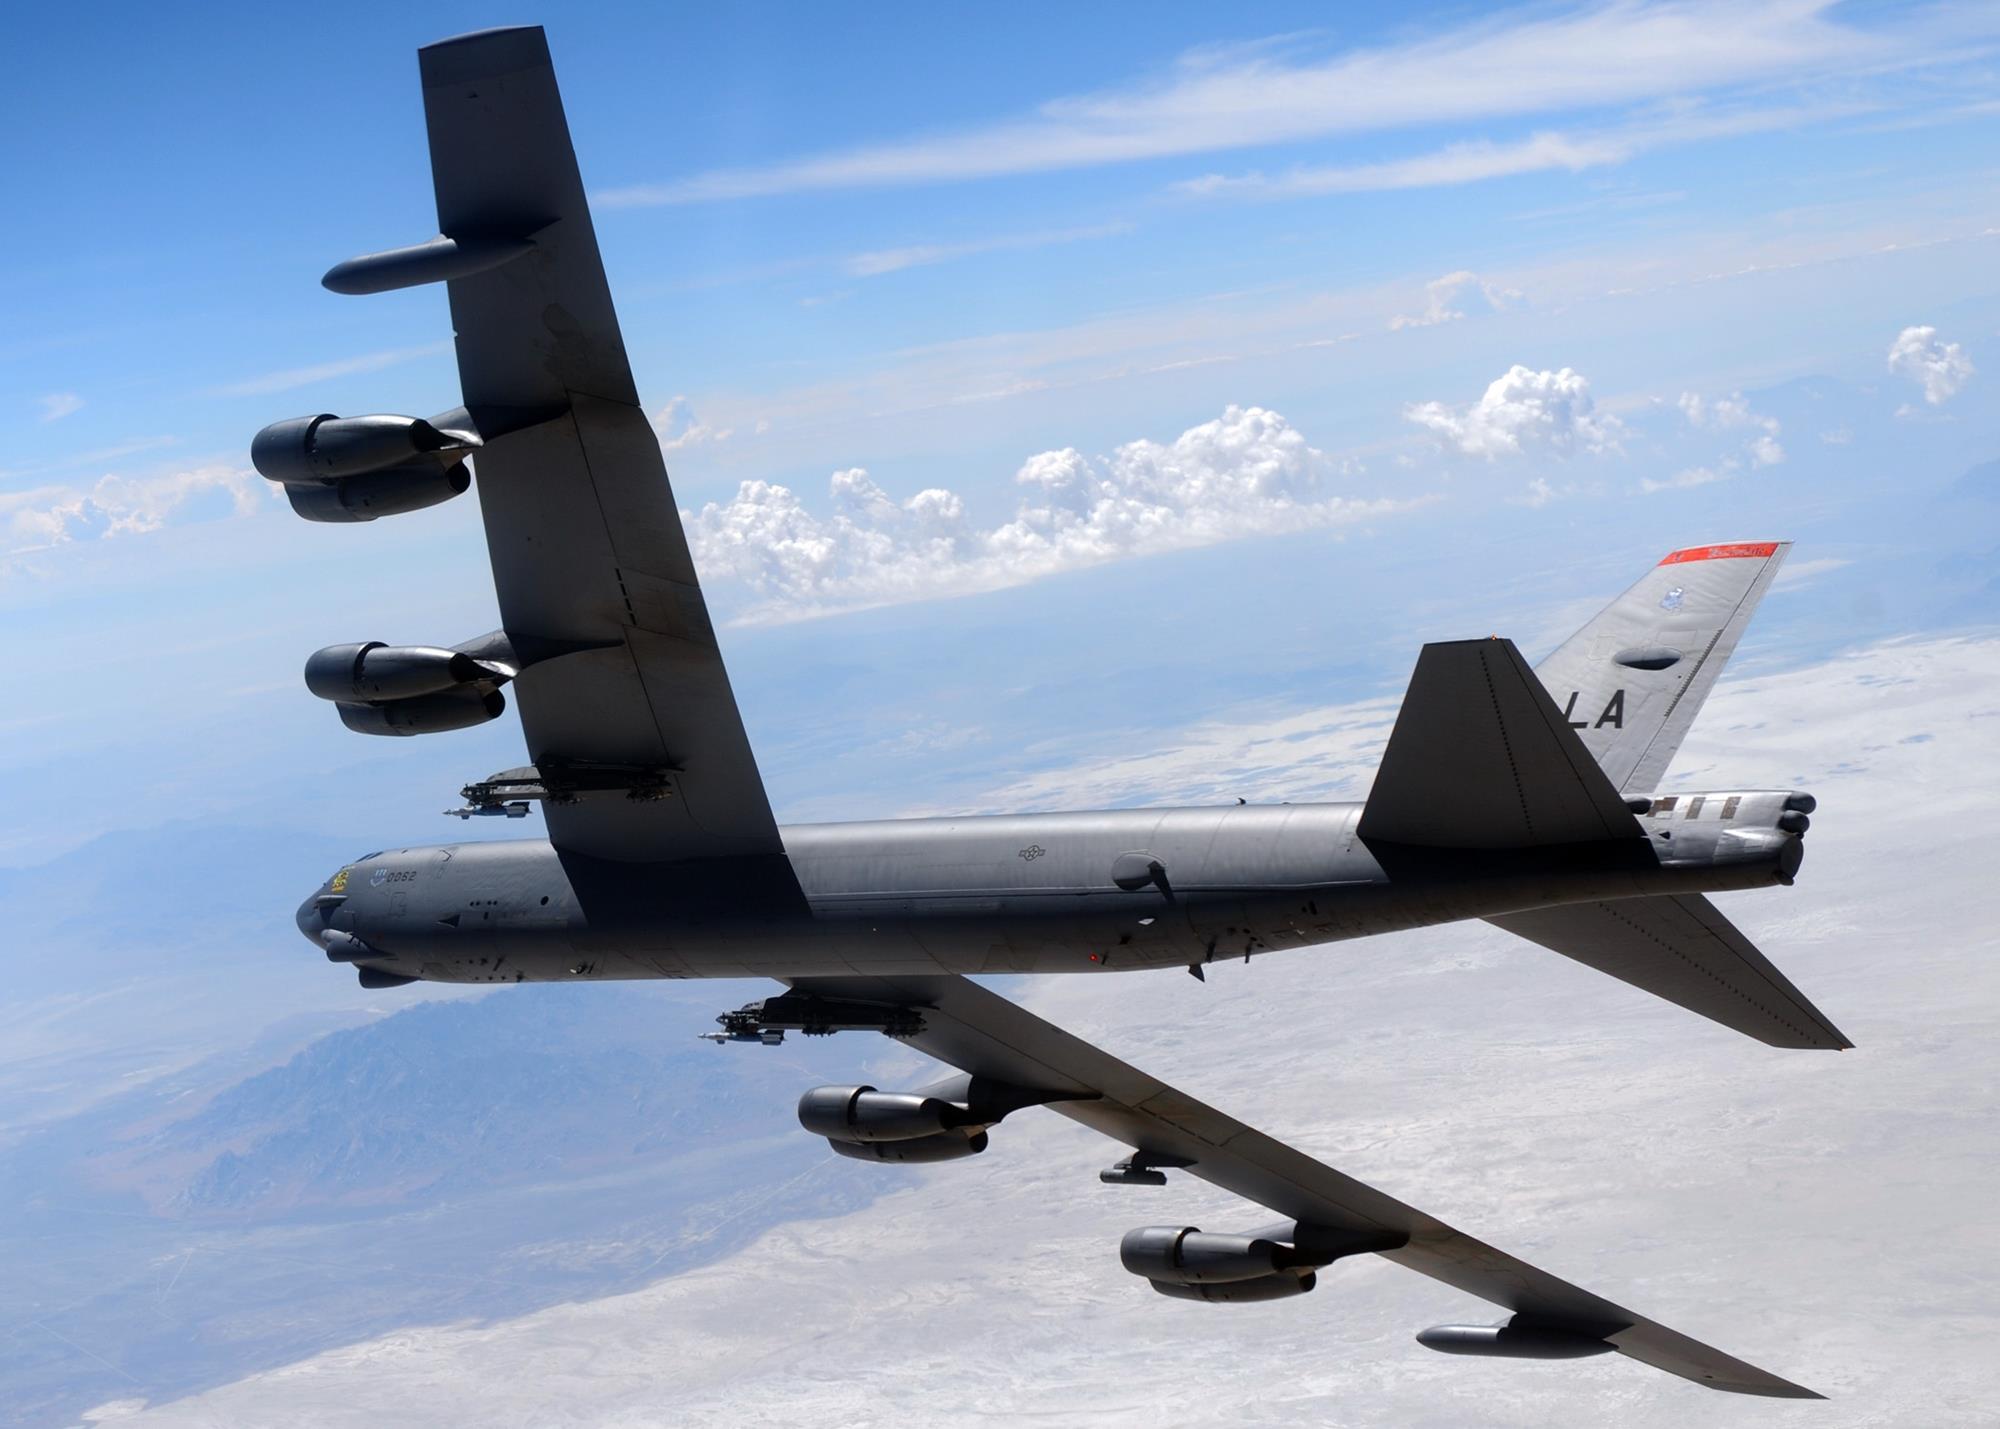 Αμερικανικό στρατηγικό βομβαρδιστικό B-52 πέταξε πάνω από την Αθήνα – Ανεφοδιάστηκε από τουρκικό KC-135R